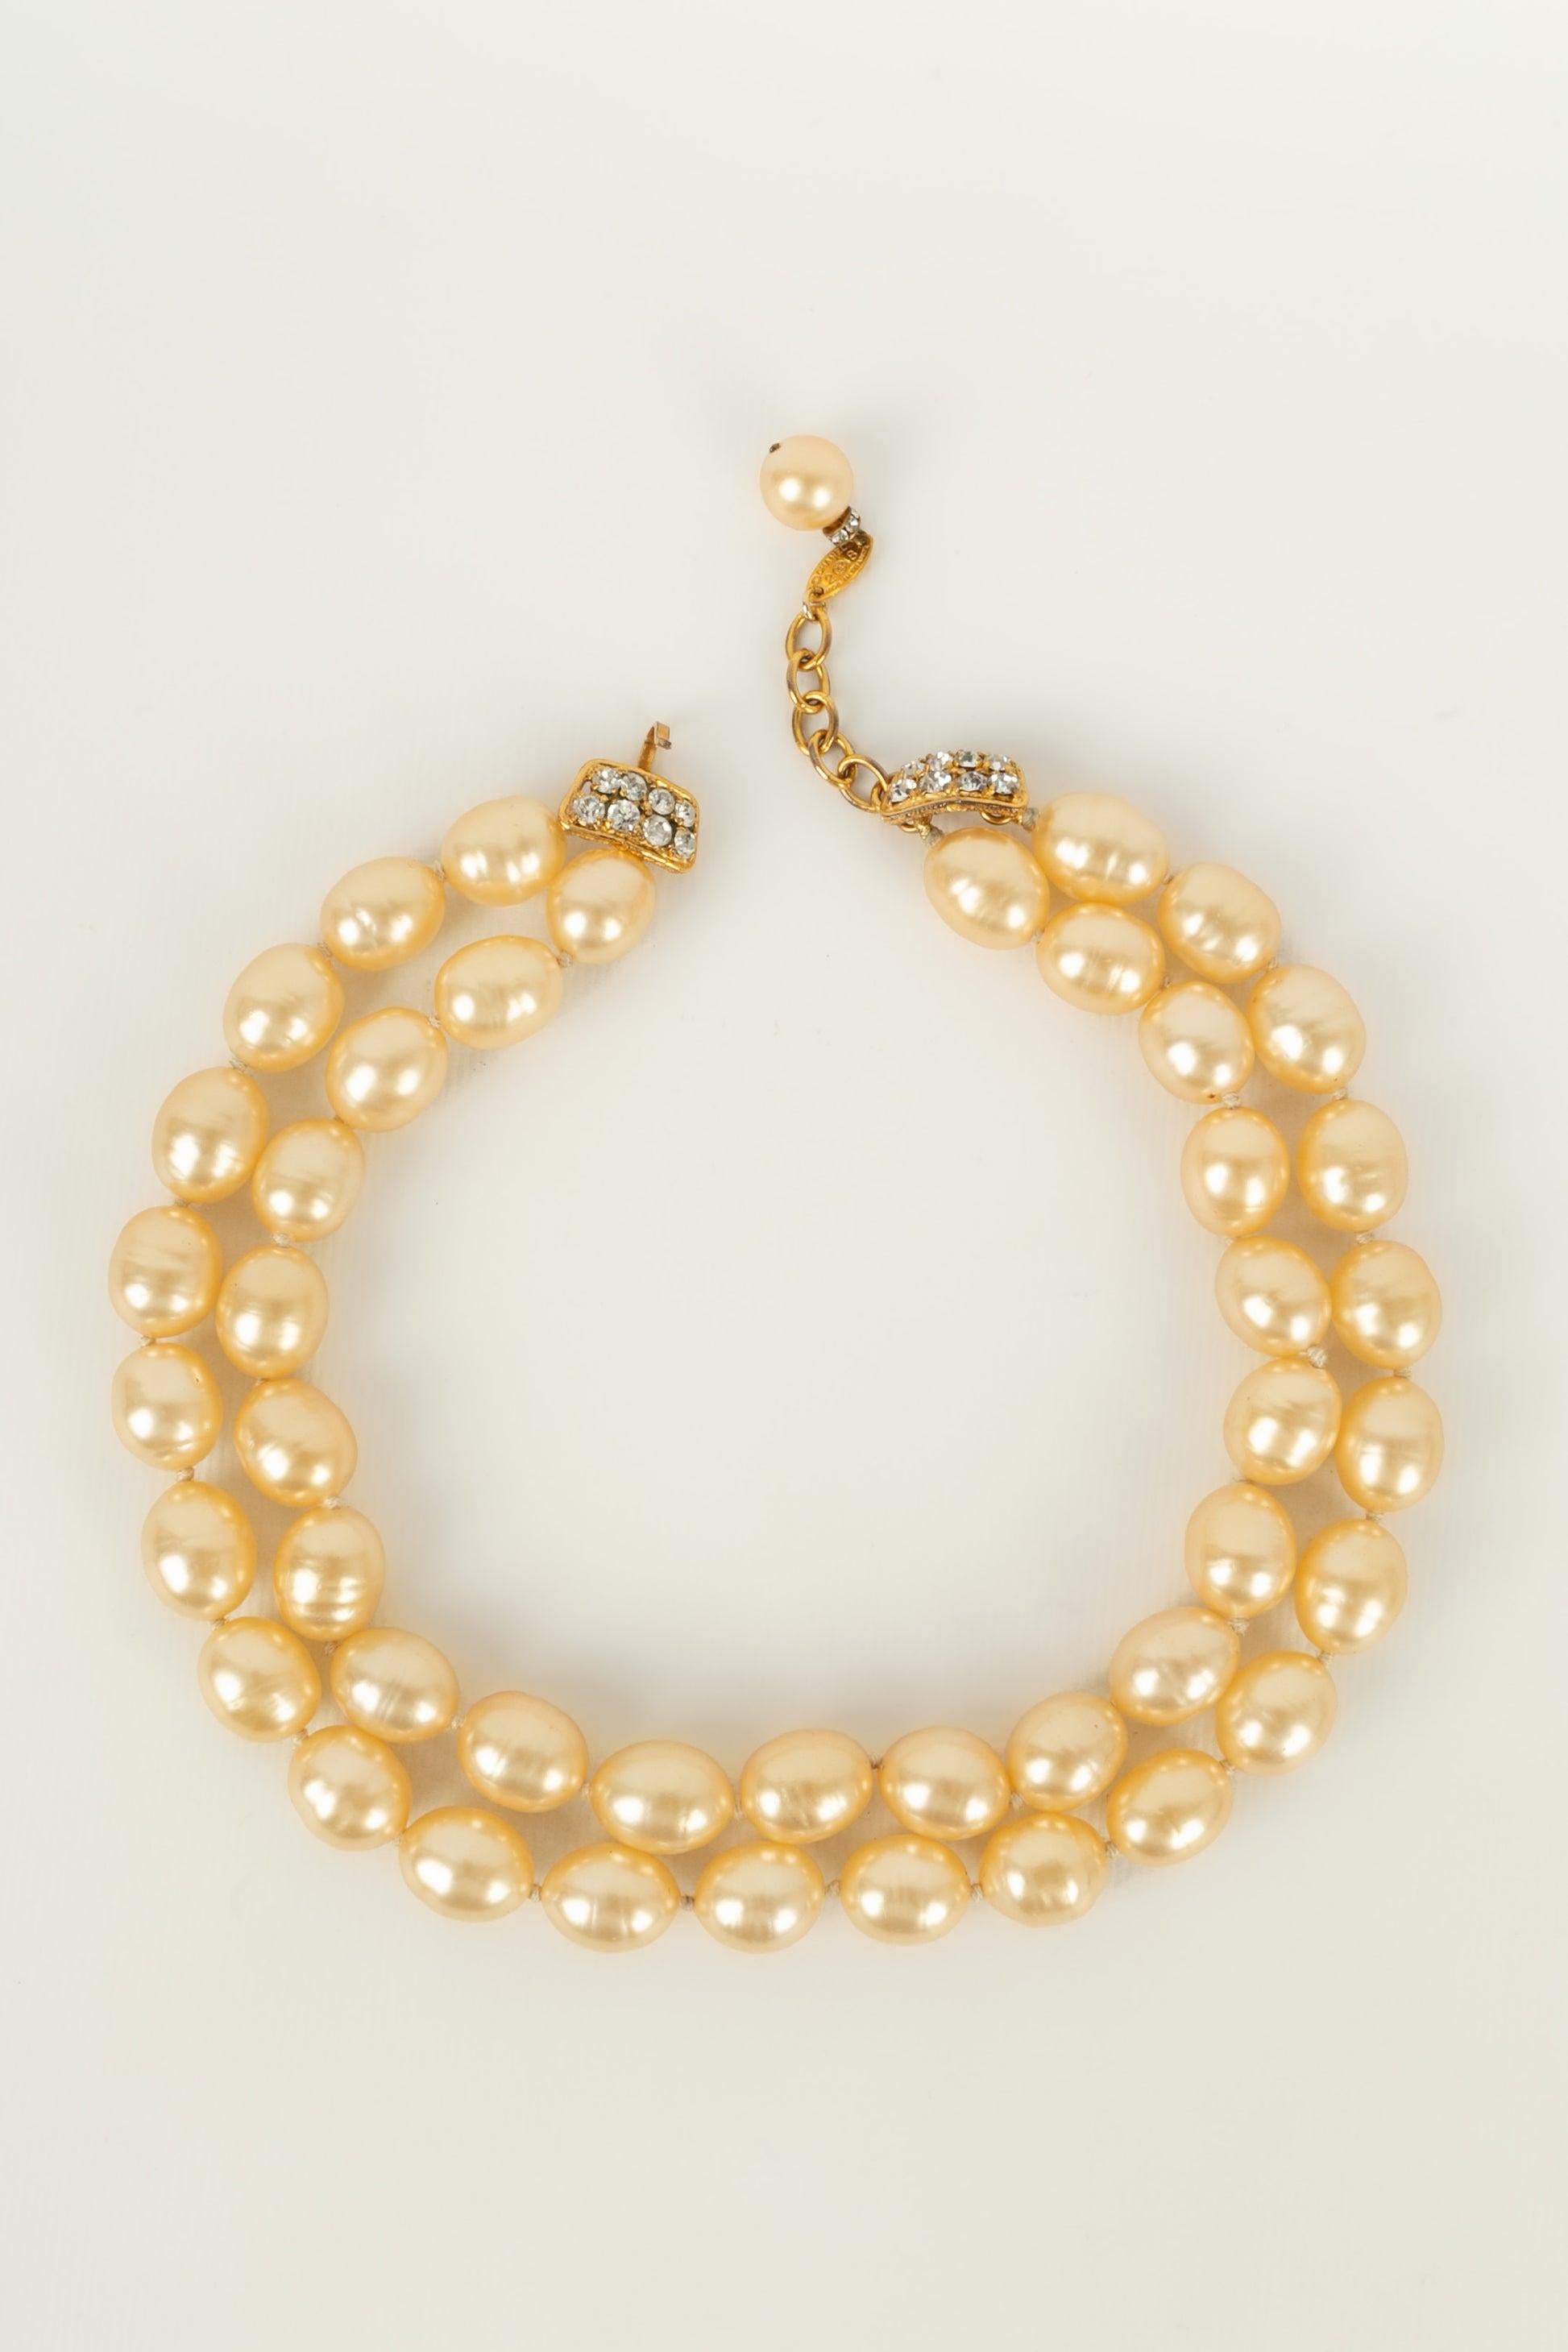 Chanel - (Made in France) Kurze zweireihige Halskette aus Perlen, die mit Knoten und einem Anhänger aus vergoldetem Metall, Glaspaste und Strasssteinen zusammengesetzt sind. Collection'S 2CC8.

Zusätzliche Informationen:
Zustand: Sehr guter